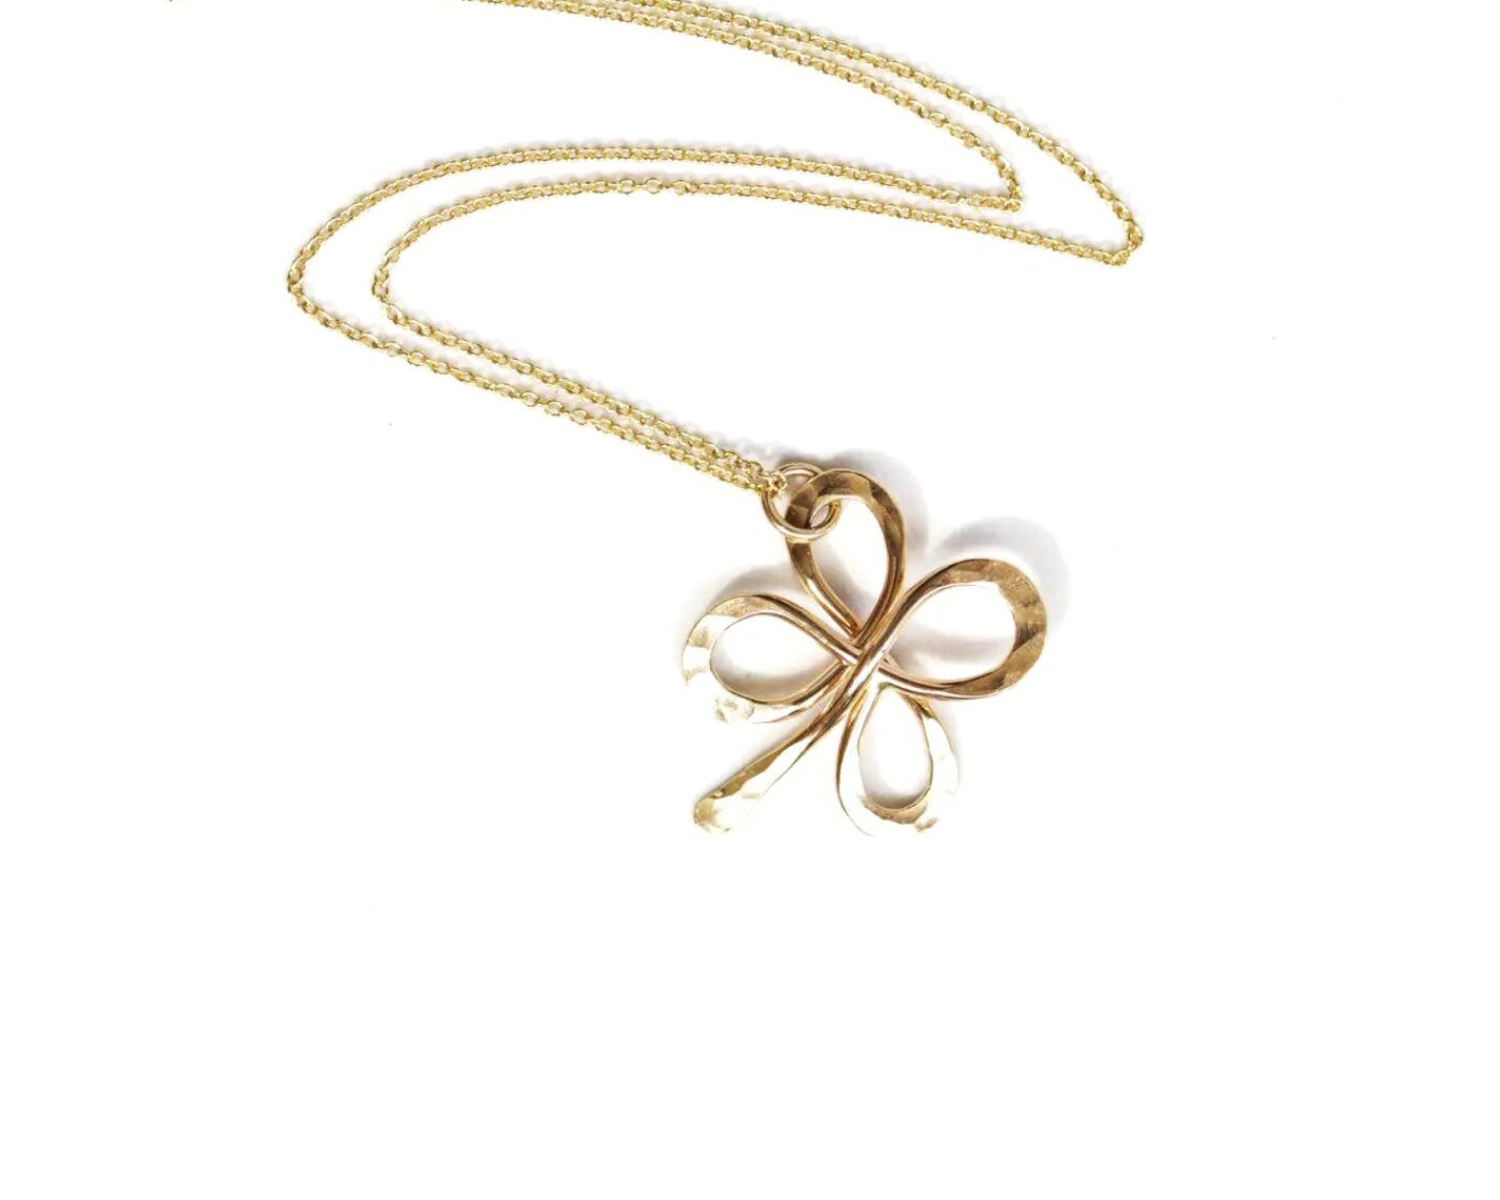 14K Real Gold Fashion Lucky Leaf Clover Bracelet